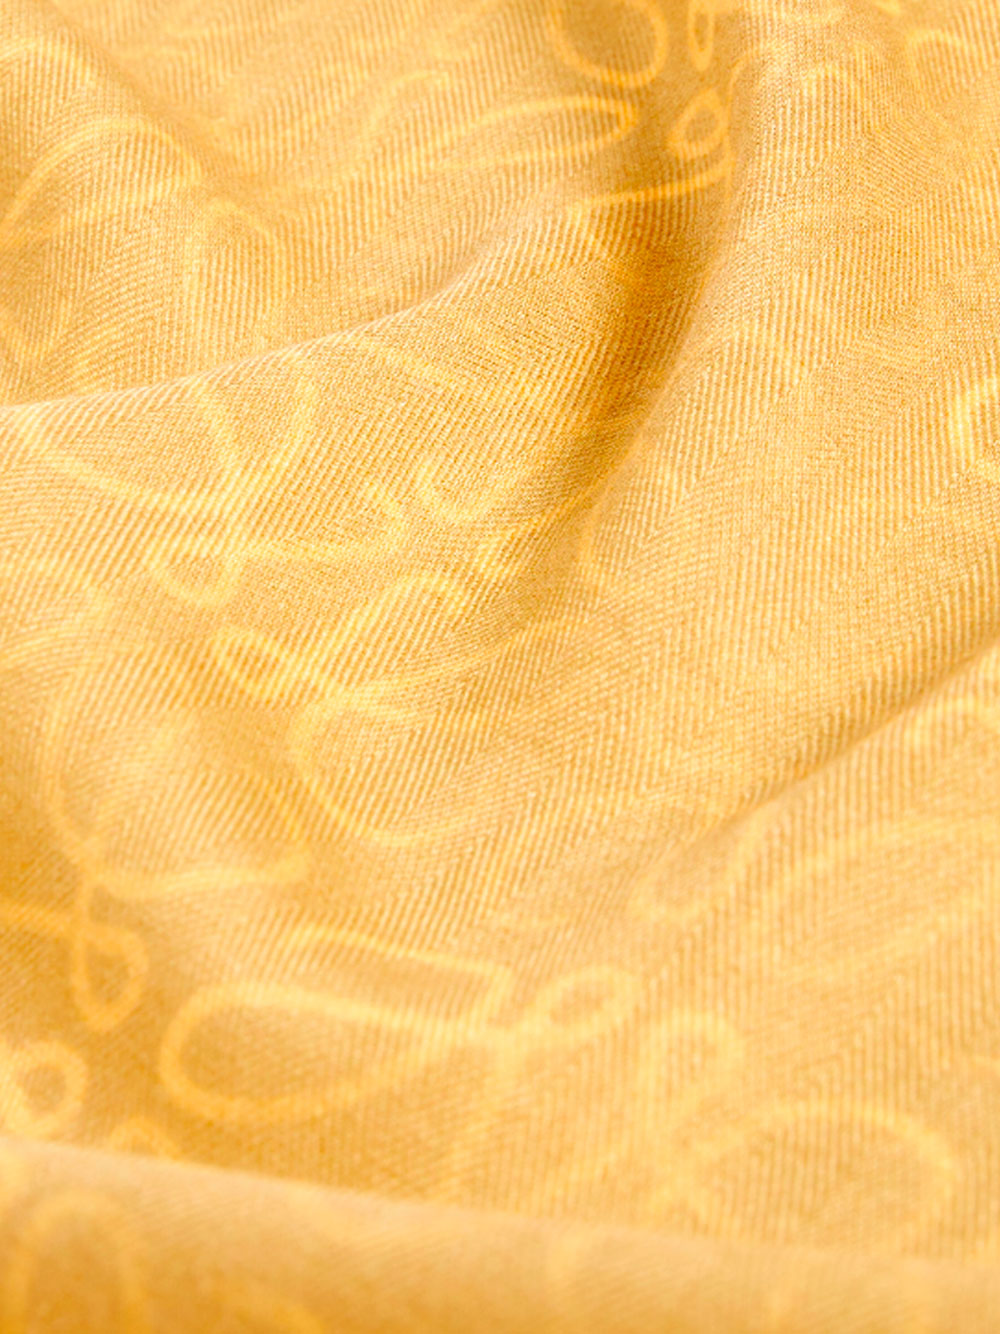 Cyanotype shawl